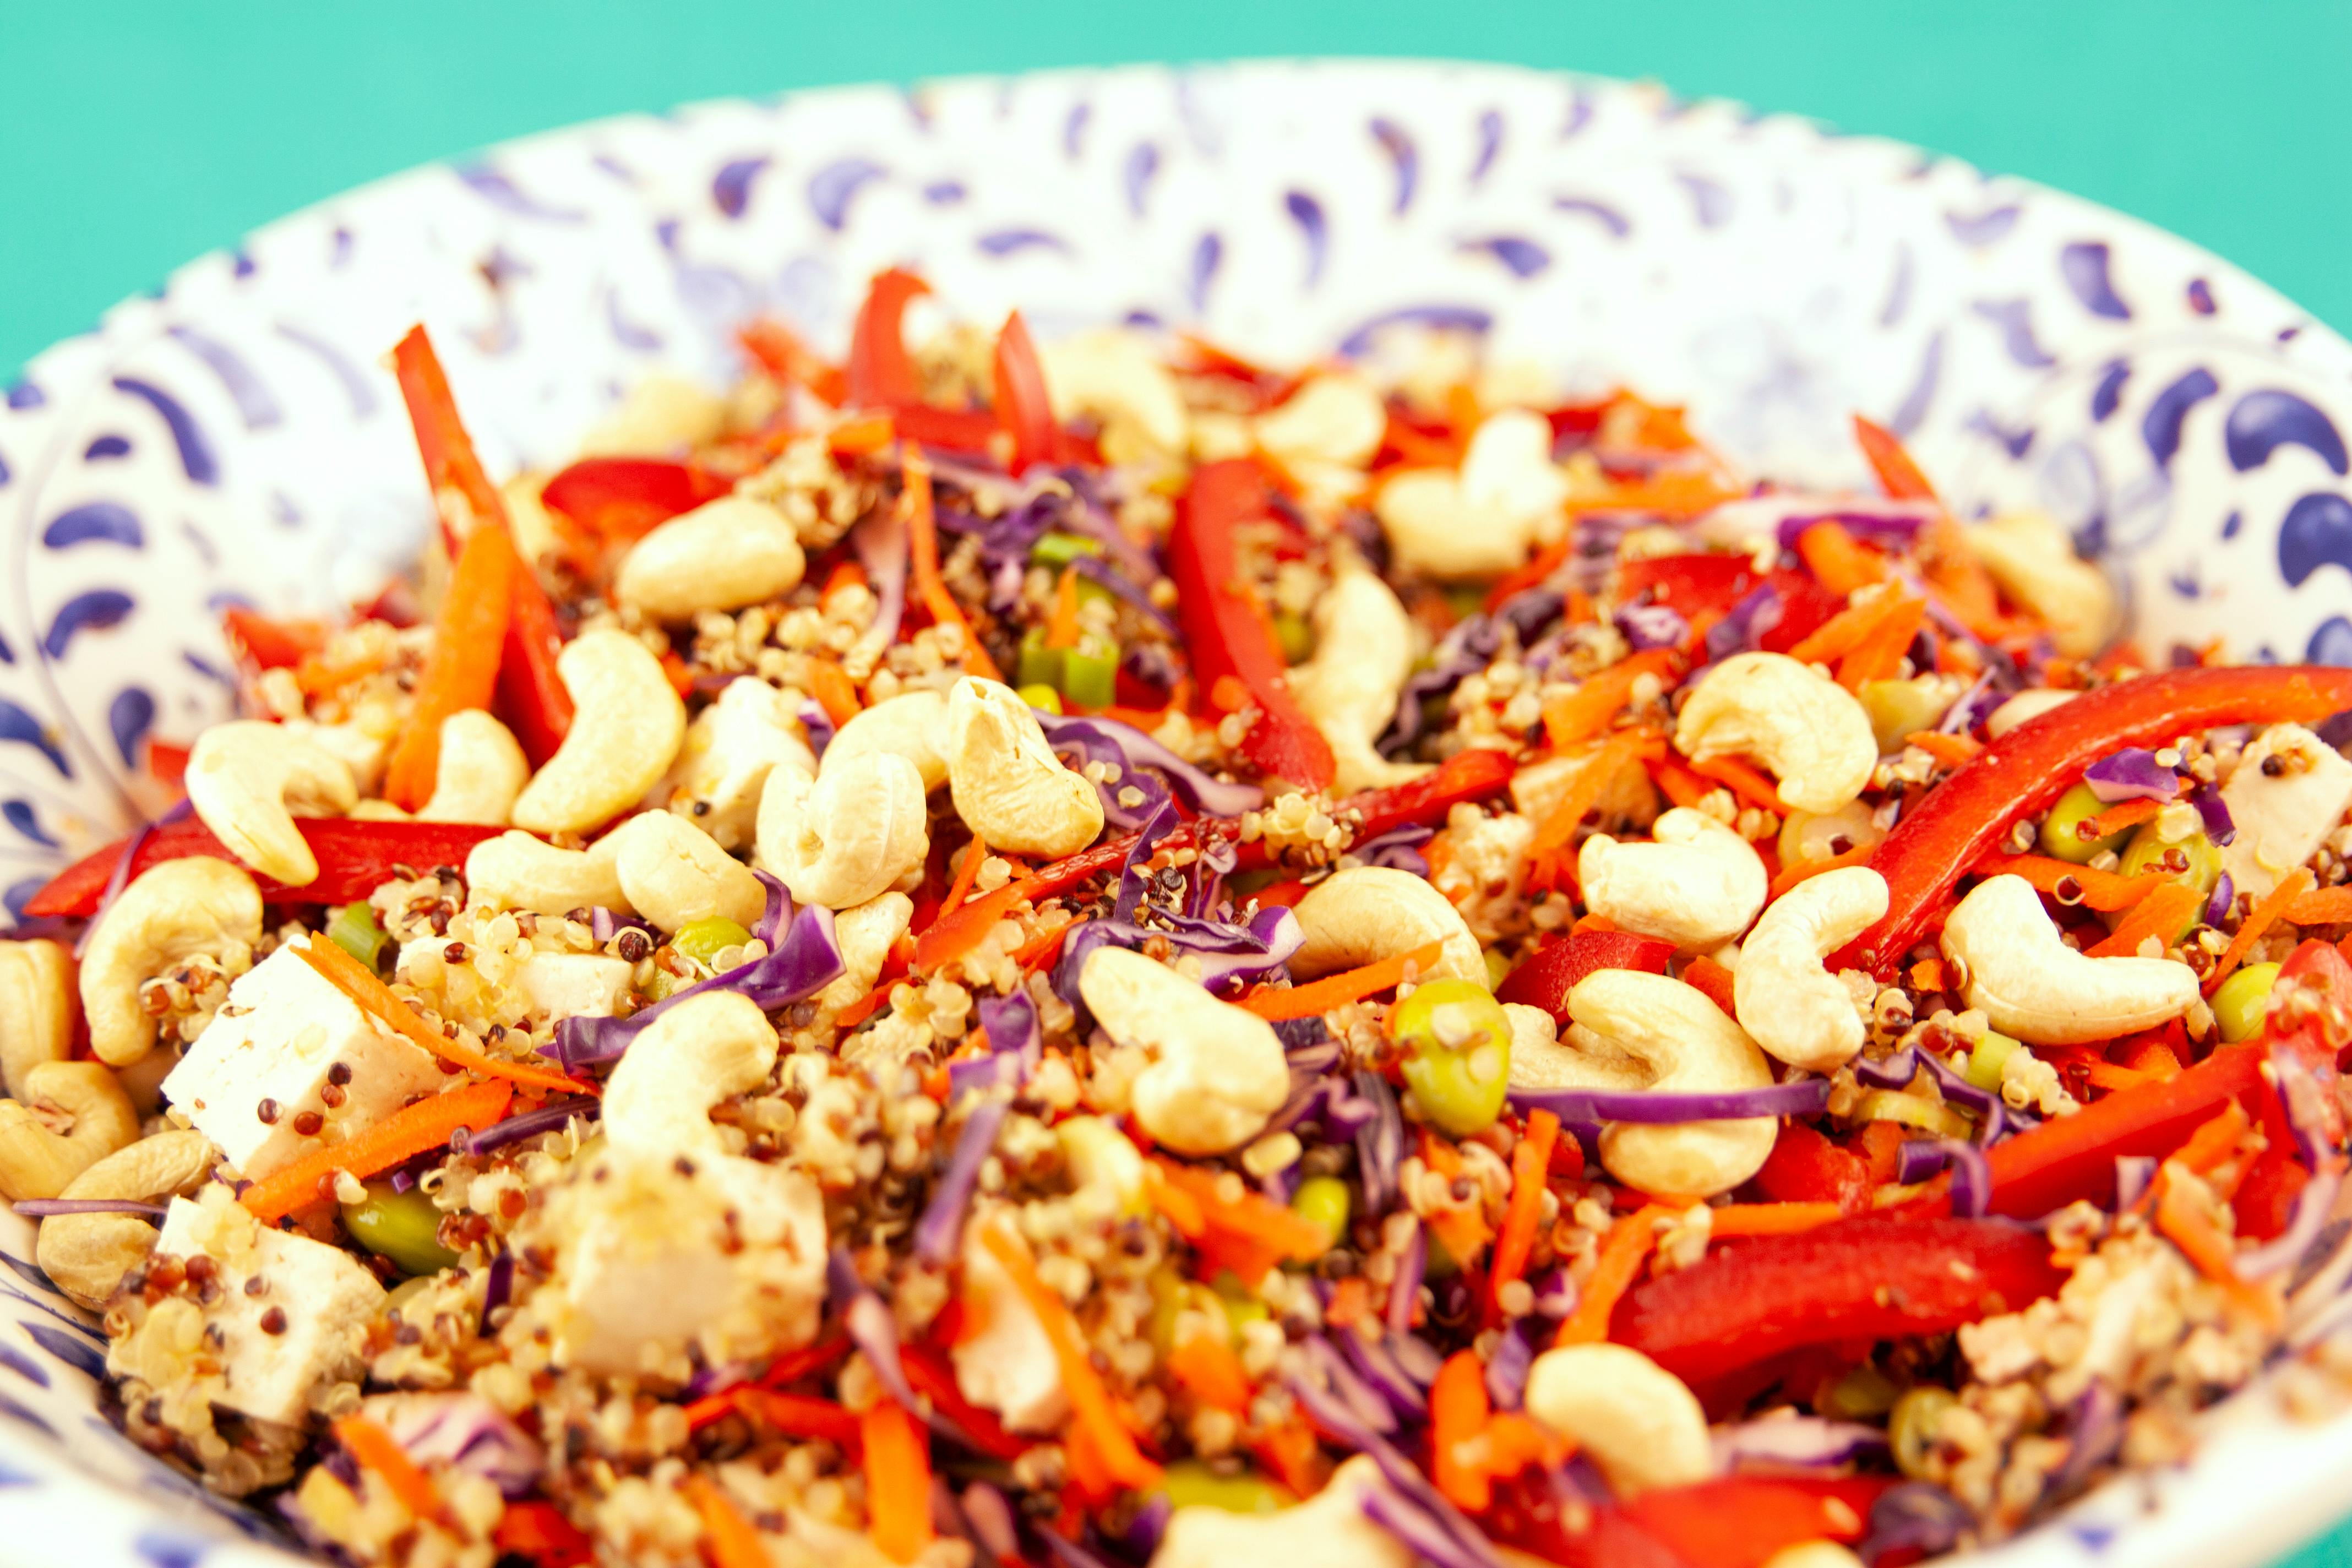 Super Delicious & Gluten-Free Meal Guide, Recipe Post #199:

Gluten Free Mediterranean Quinoa Salad